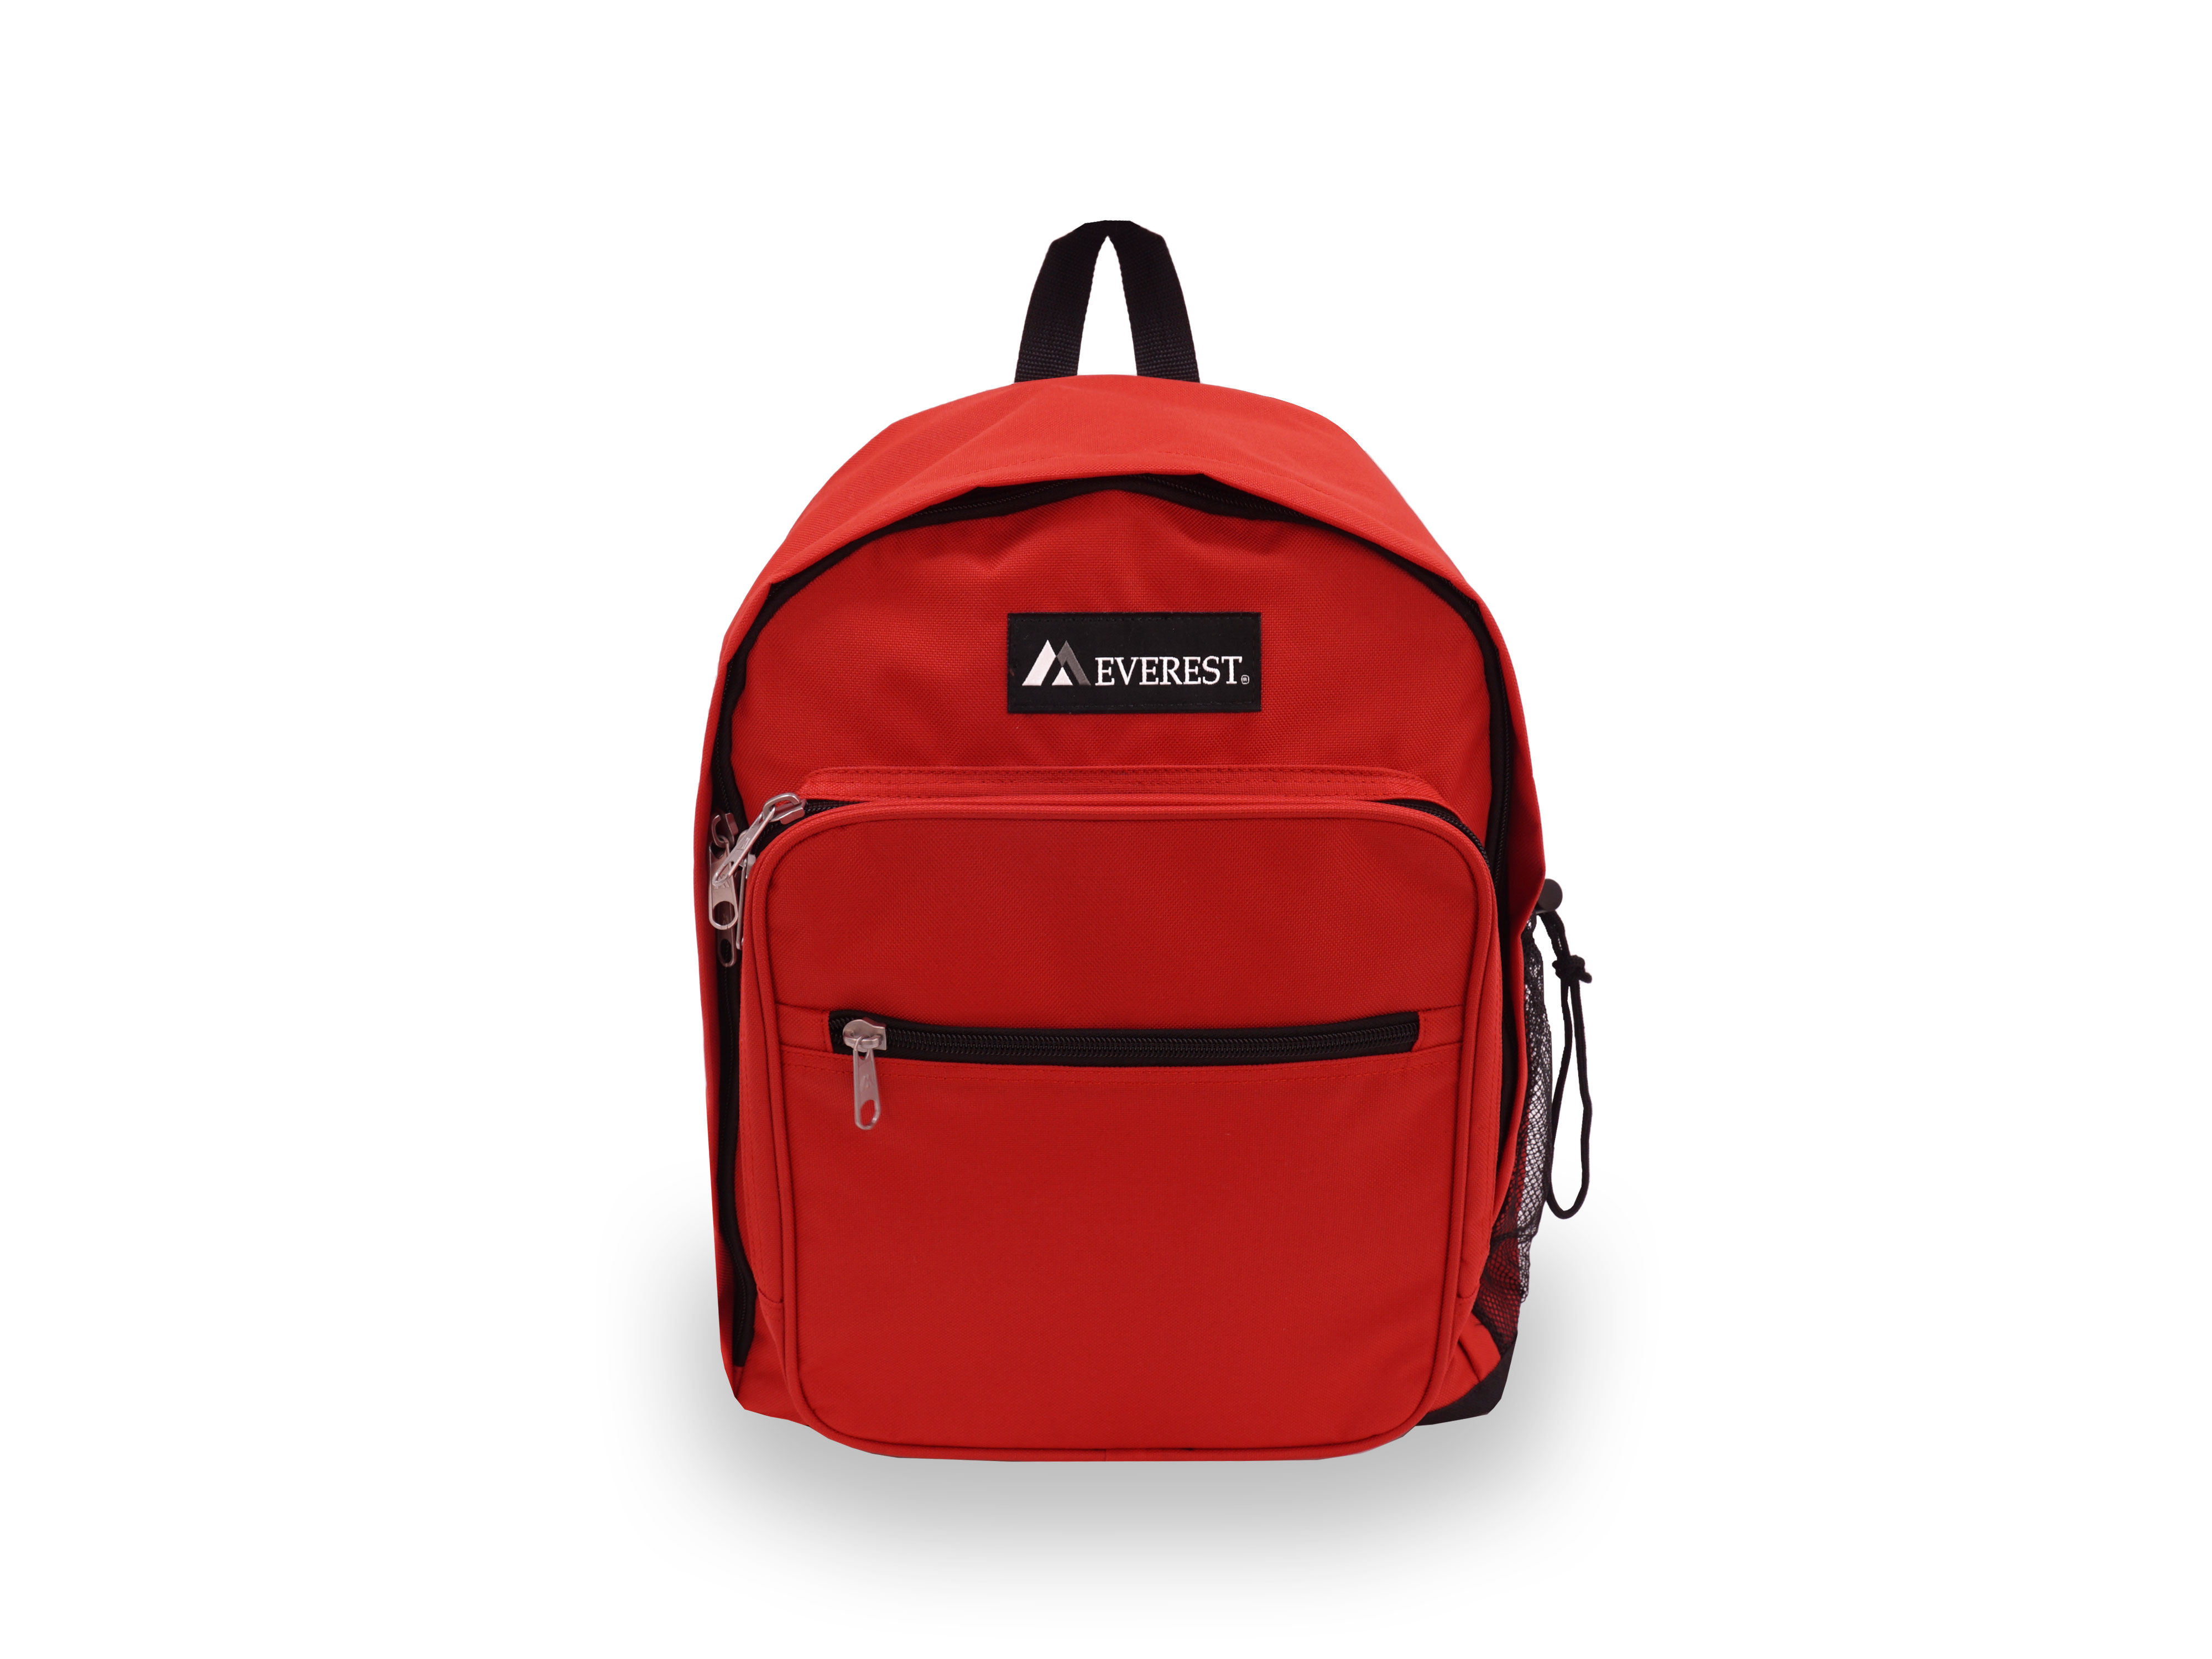 Everest Unisex Standard Backpack, Red - image 1 of 4